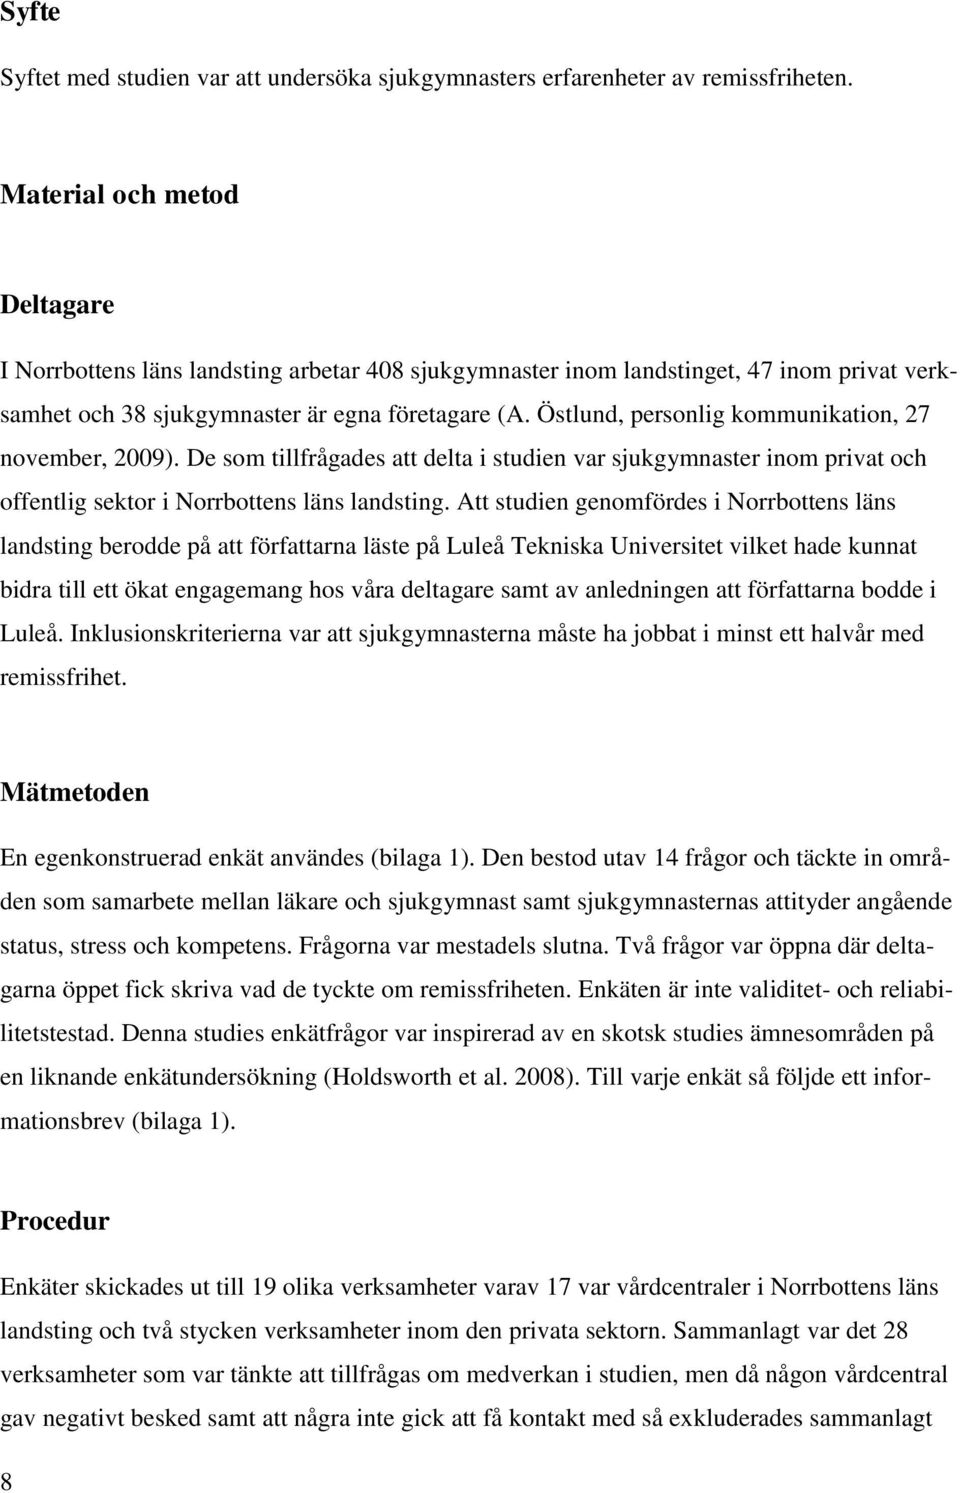 Östlund, personlig kommunikation, 27 november, 2009). De som tillfrågades att delta i studien var sjukgymnaster inom privat och offentlig sektor i Norrbottens läns landsting.